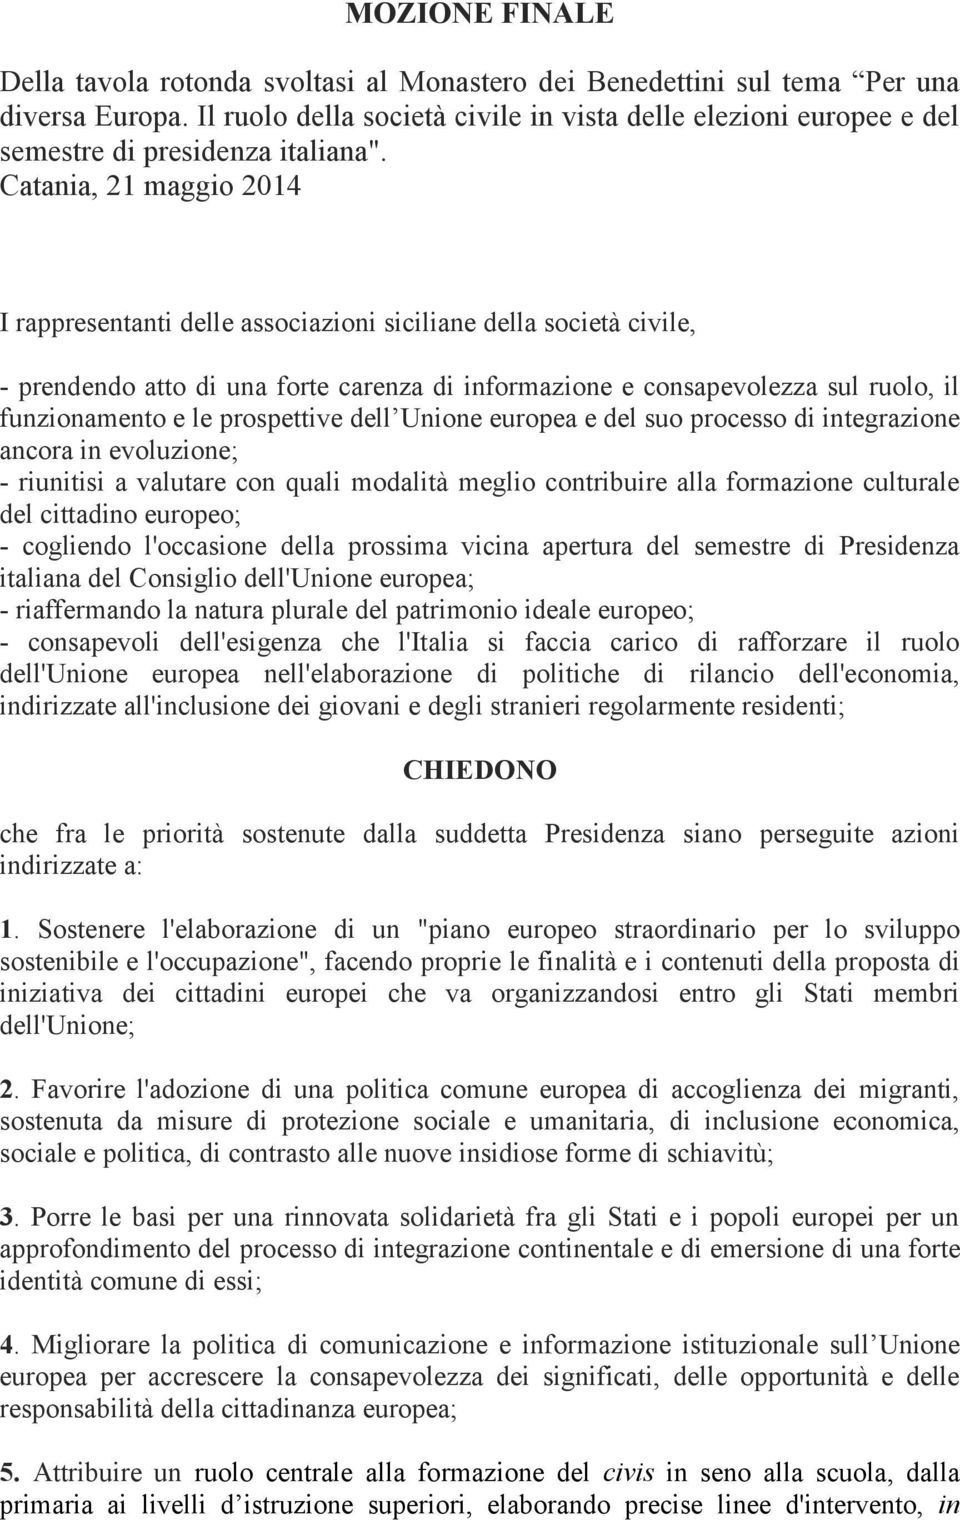 Catania, 21 maggio 2014 I rappresentanti delle associazioni siciliane della società civile, - prendendo atto di una forte carenza di informazione e consapevolezza sul ruolo, il funzionamento e le